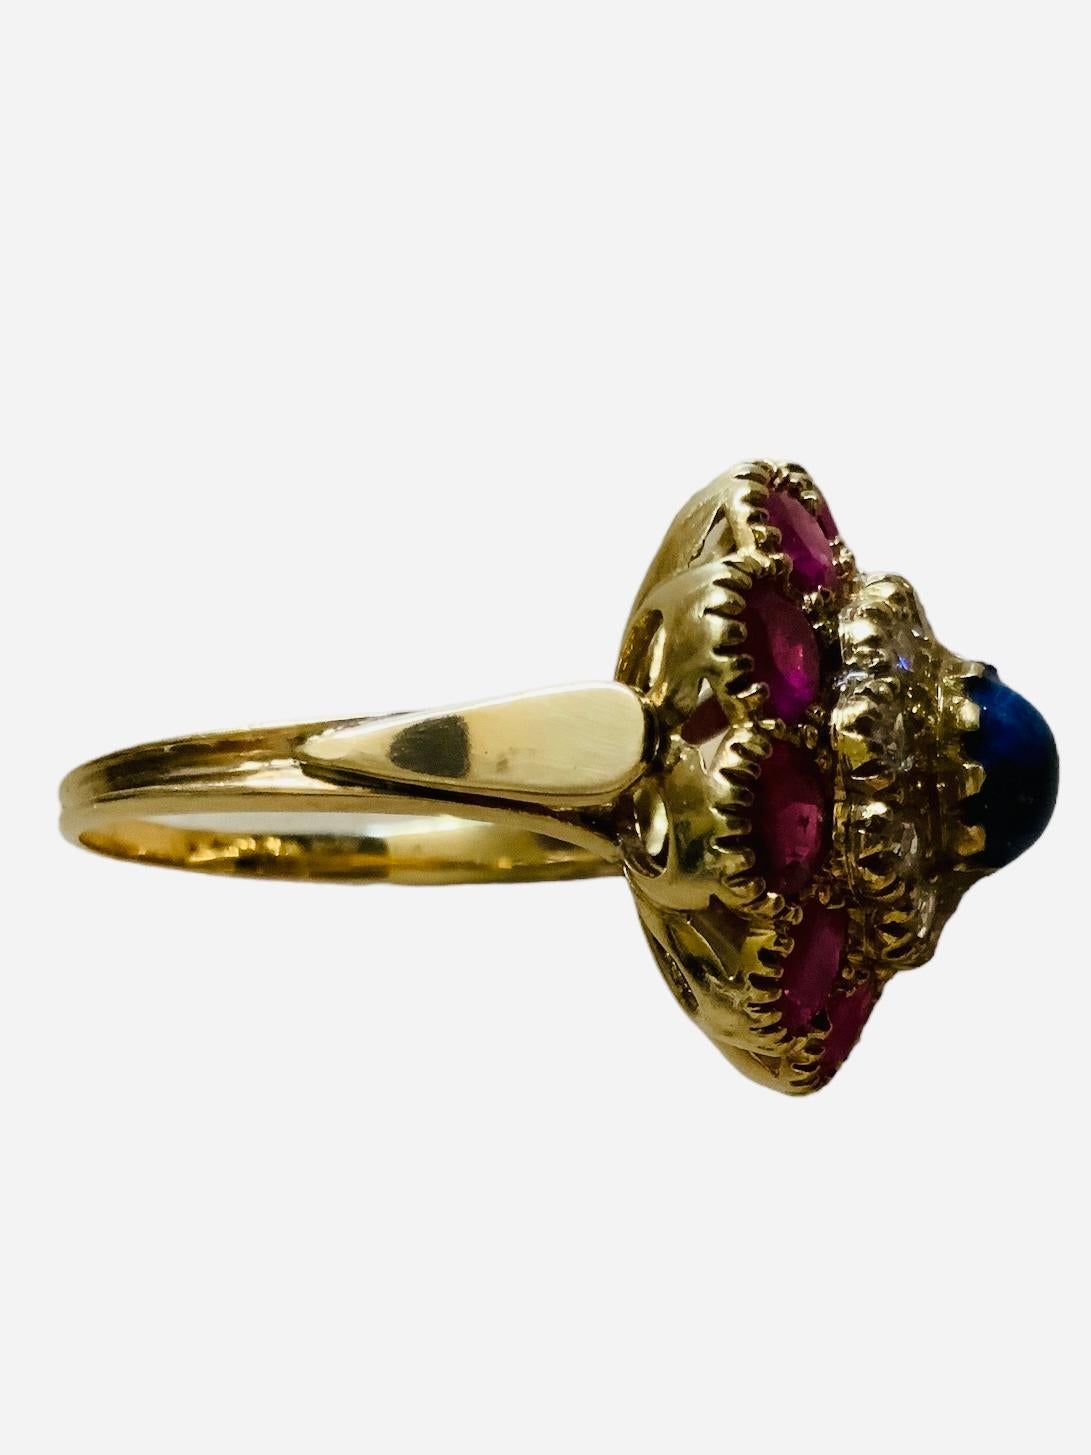 Dies ist ein 18K Gelbgold Diamanten, Lapislazuli und Rubine Cocktail-Ring. Die Spitze des Rings bildet eine Blume. Dieser Ring besteht aus einem großen Halo aus zehn rund geschliffenen und facettierten Rubinen in Zackenfassung, gefolgt von einem